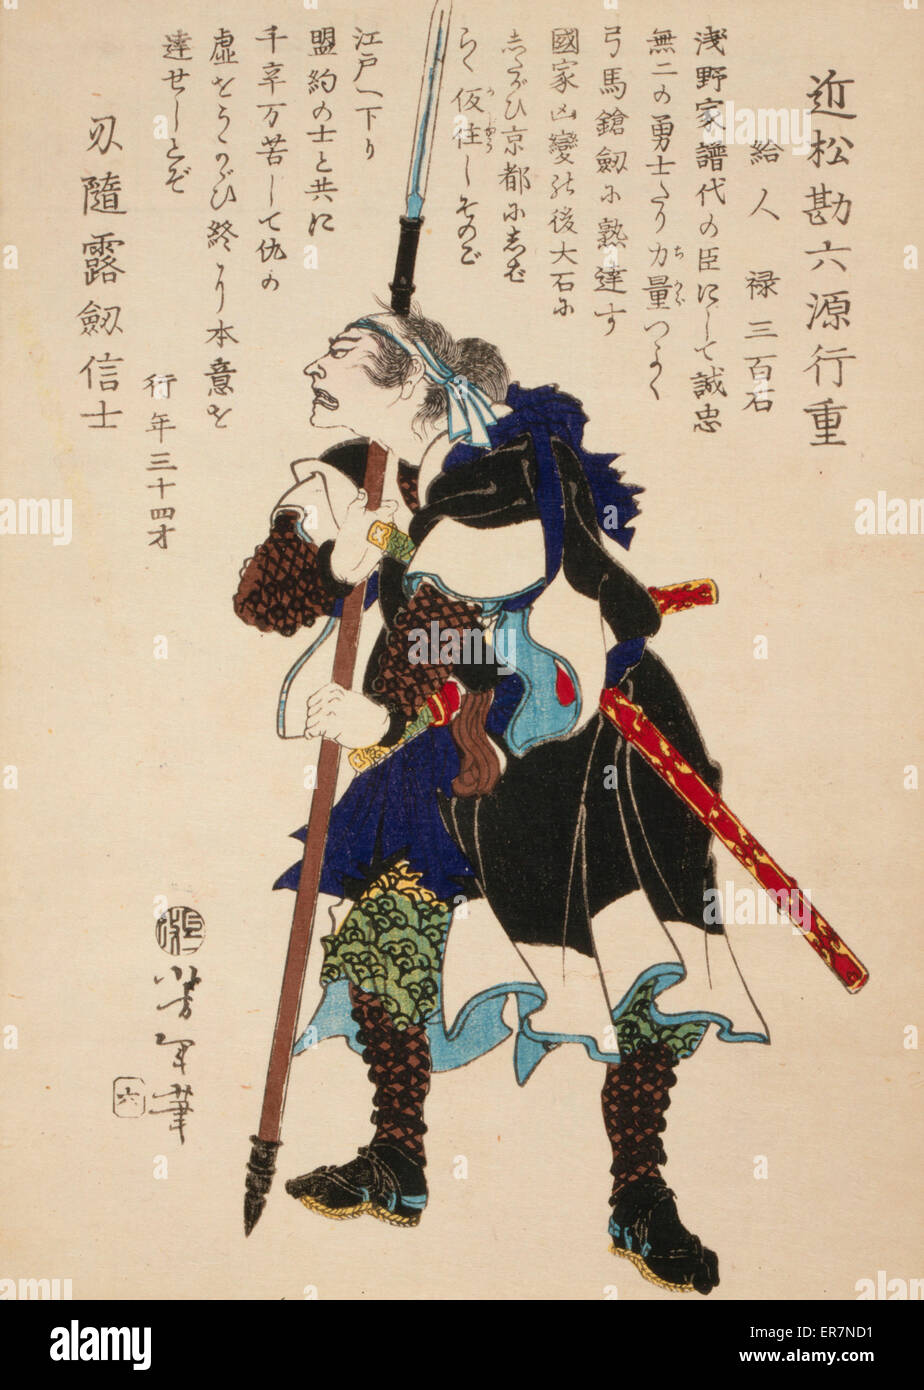 Samurai art hi-res stock photography and images - Alamy